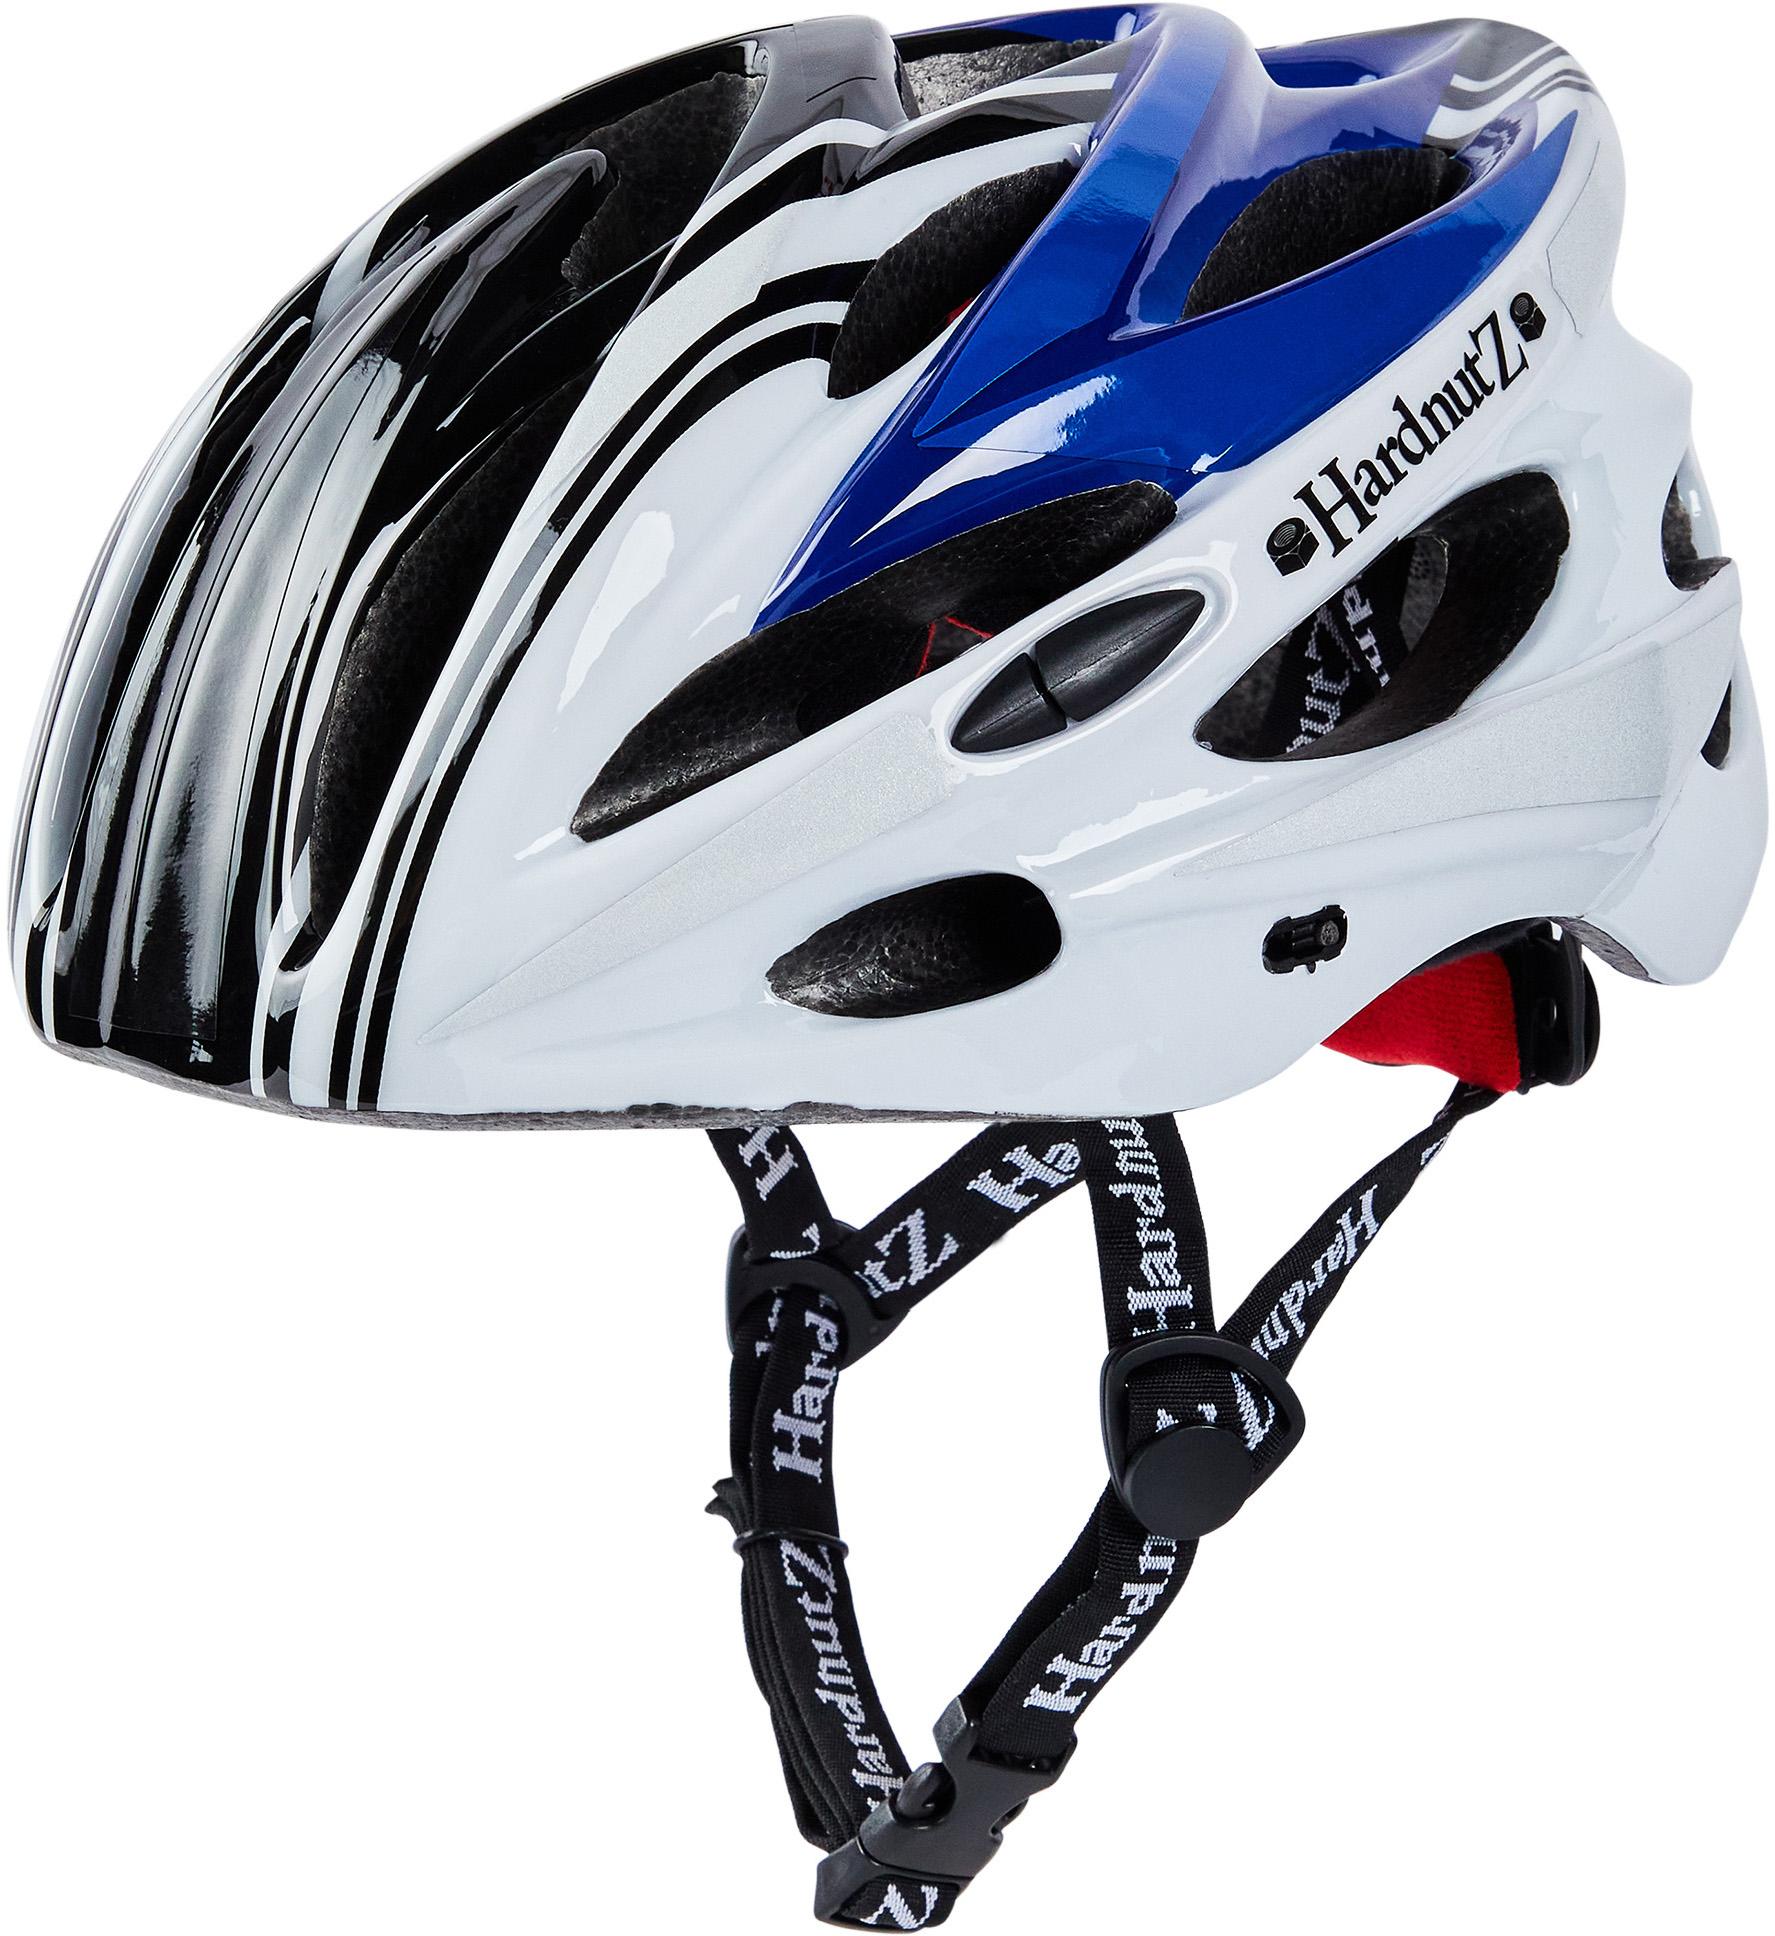 Hardnutz Stealth Hi-Vis Cycle Helmet, Blue/White/Black